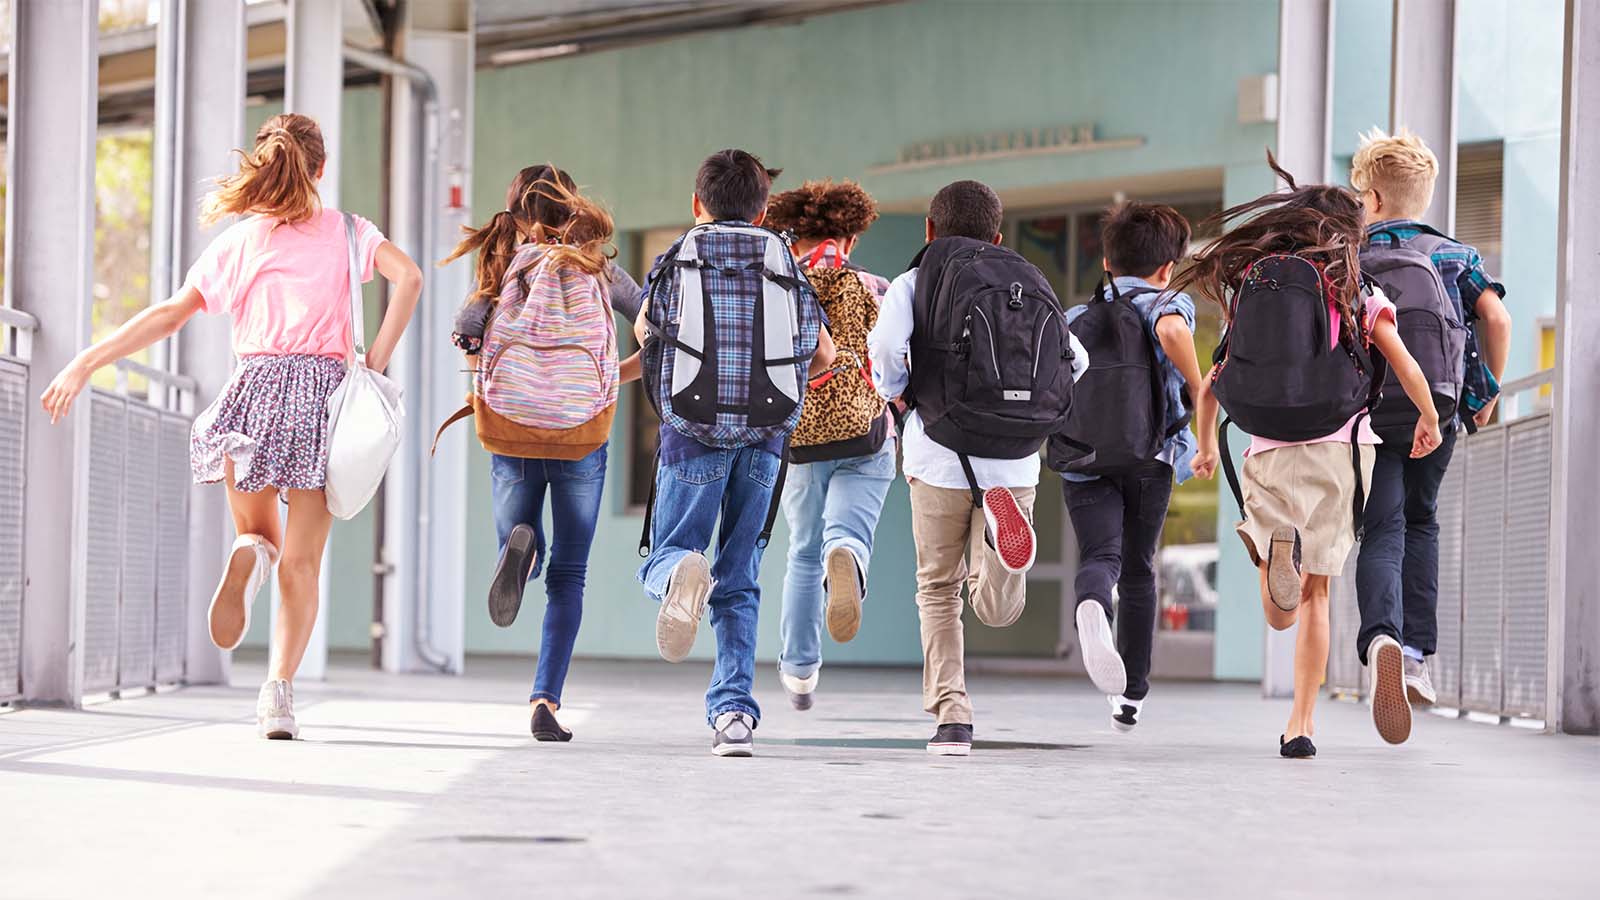 תלמידי יסודי יוצאים לחופש הגדול. (צילום אילוסטרציה: Shutterstock)